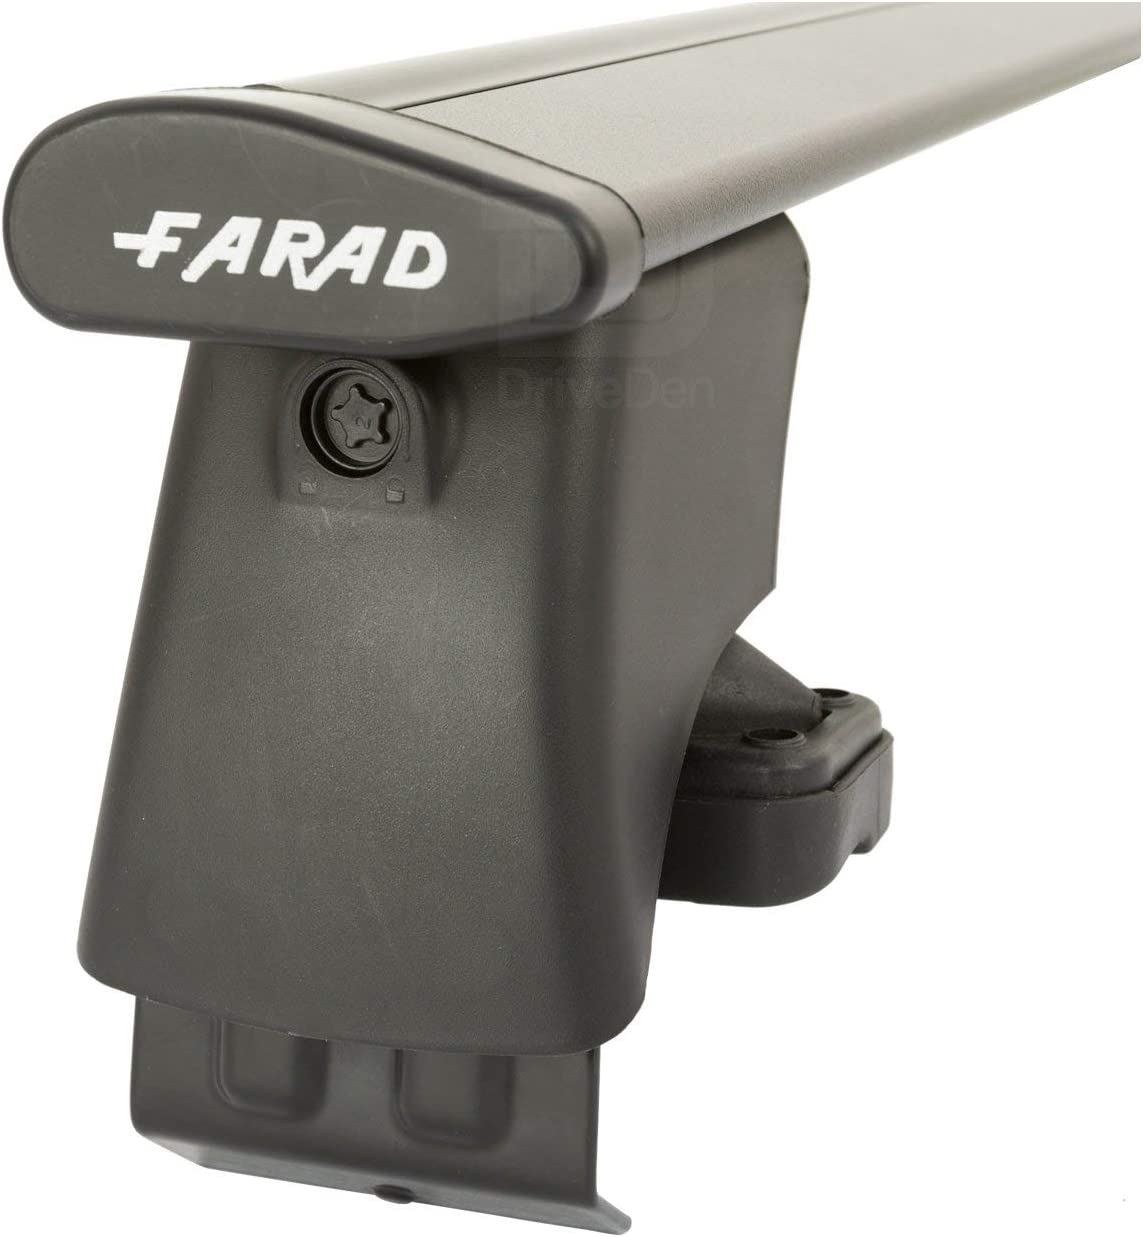 FARAD-Kit H2 per barre portatutto - Audi A3 Sportback 2003-2012 (senza corrimano)